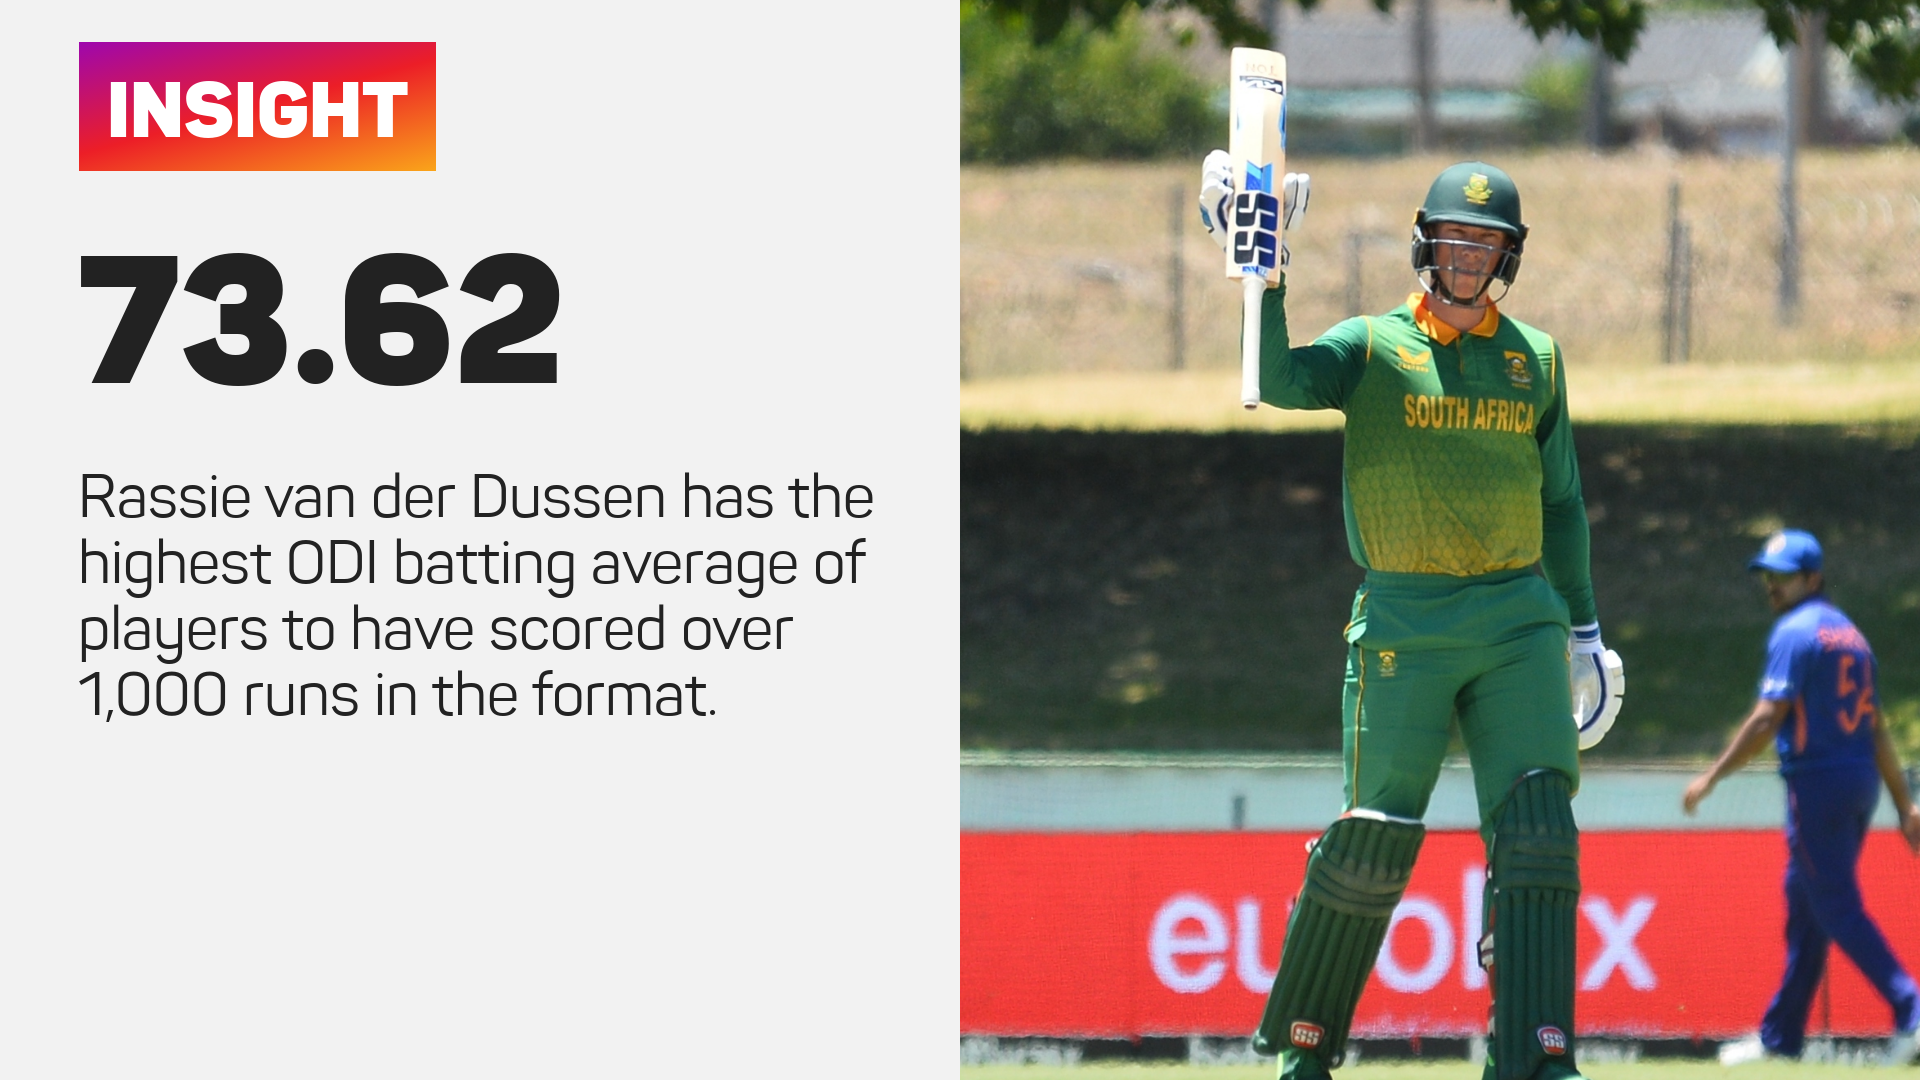 Rassie van der Dussen has an ODI batting average of 73.62